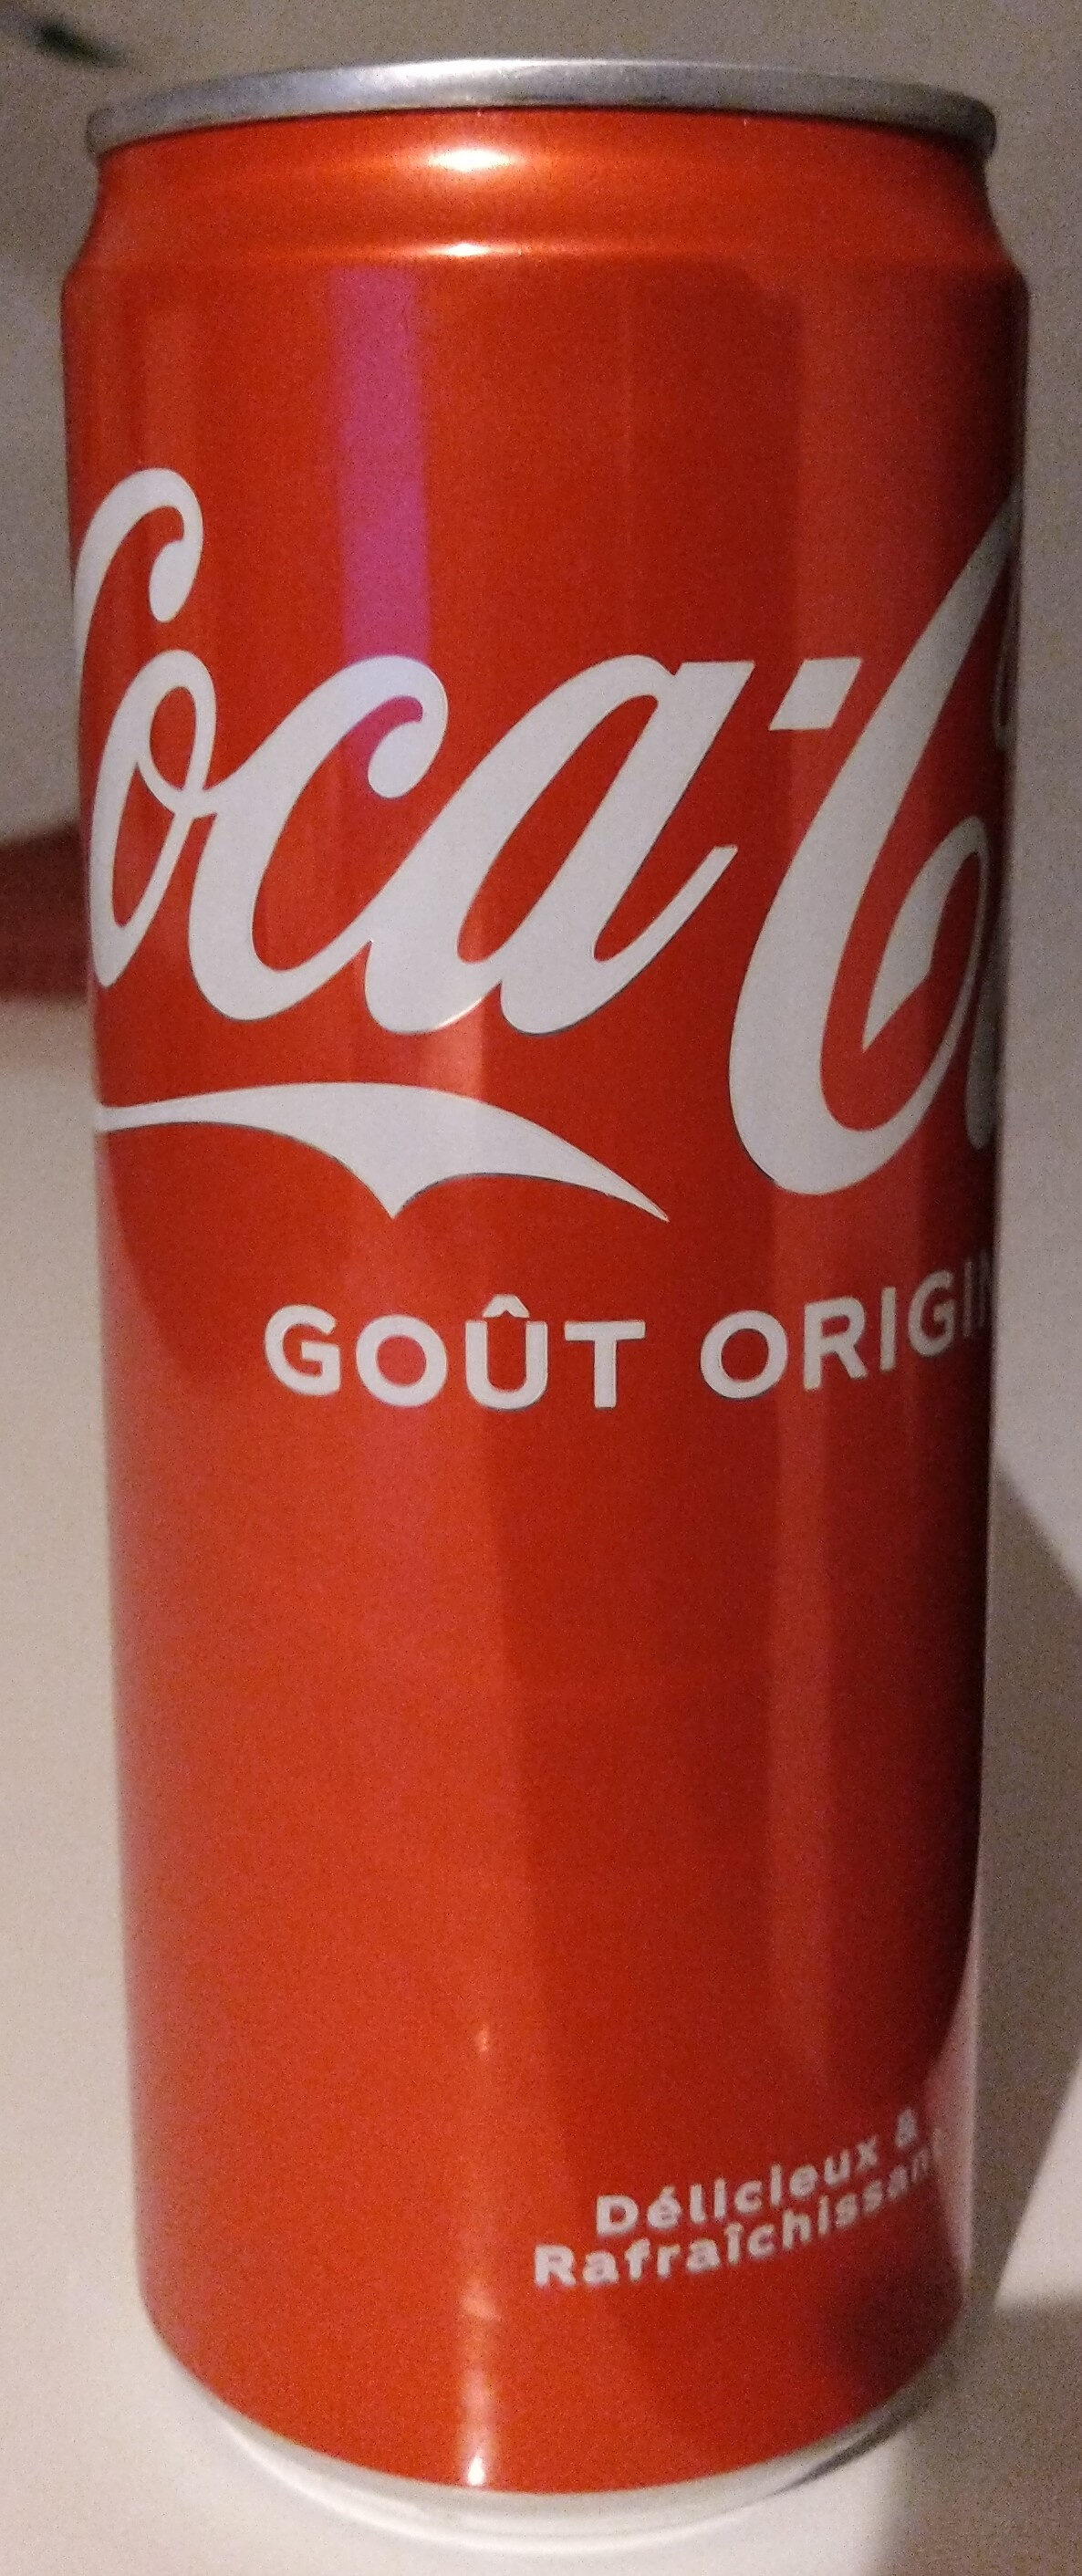 Coca-cola goût original - Nährwertangaben - en